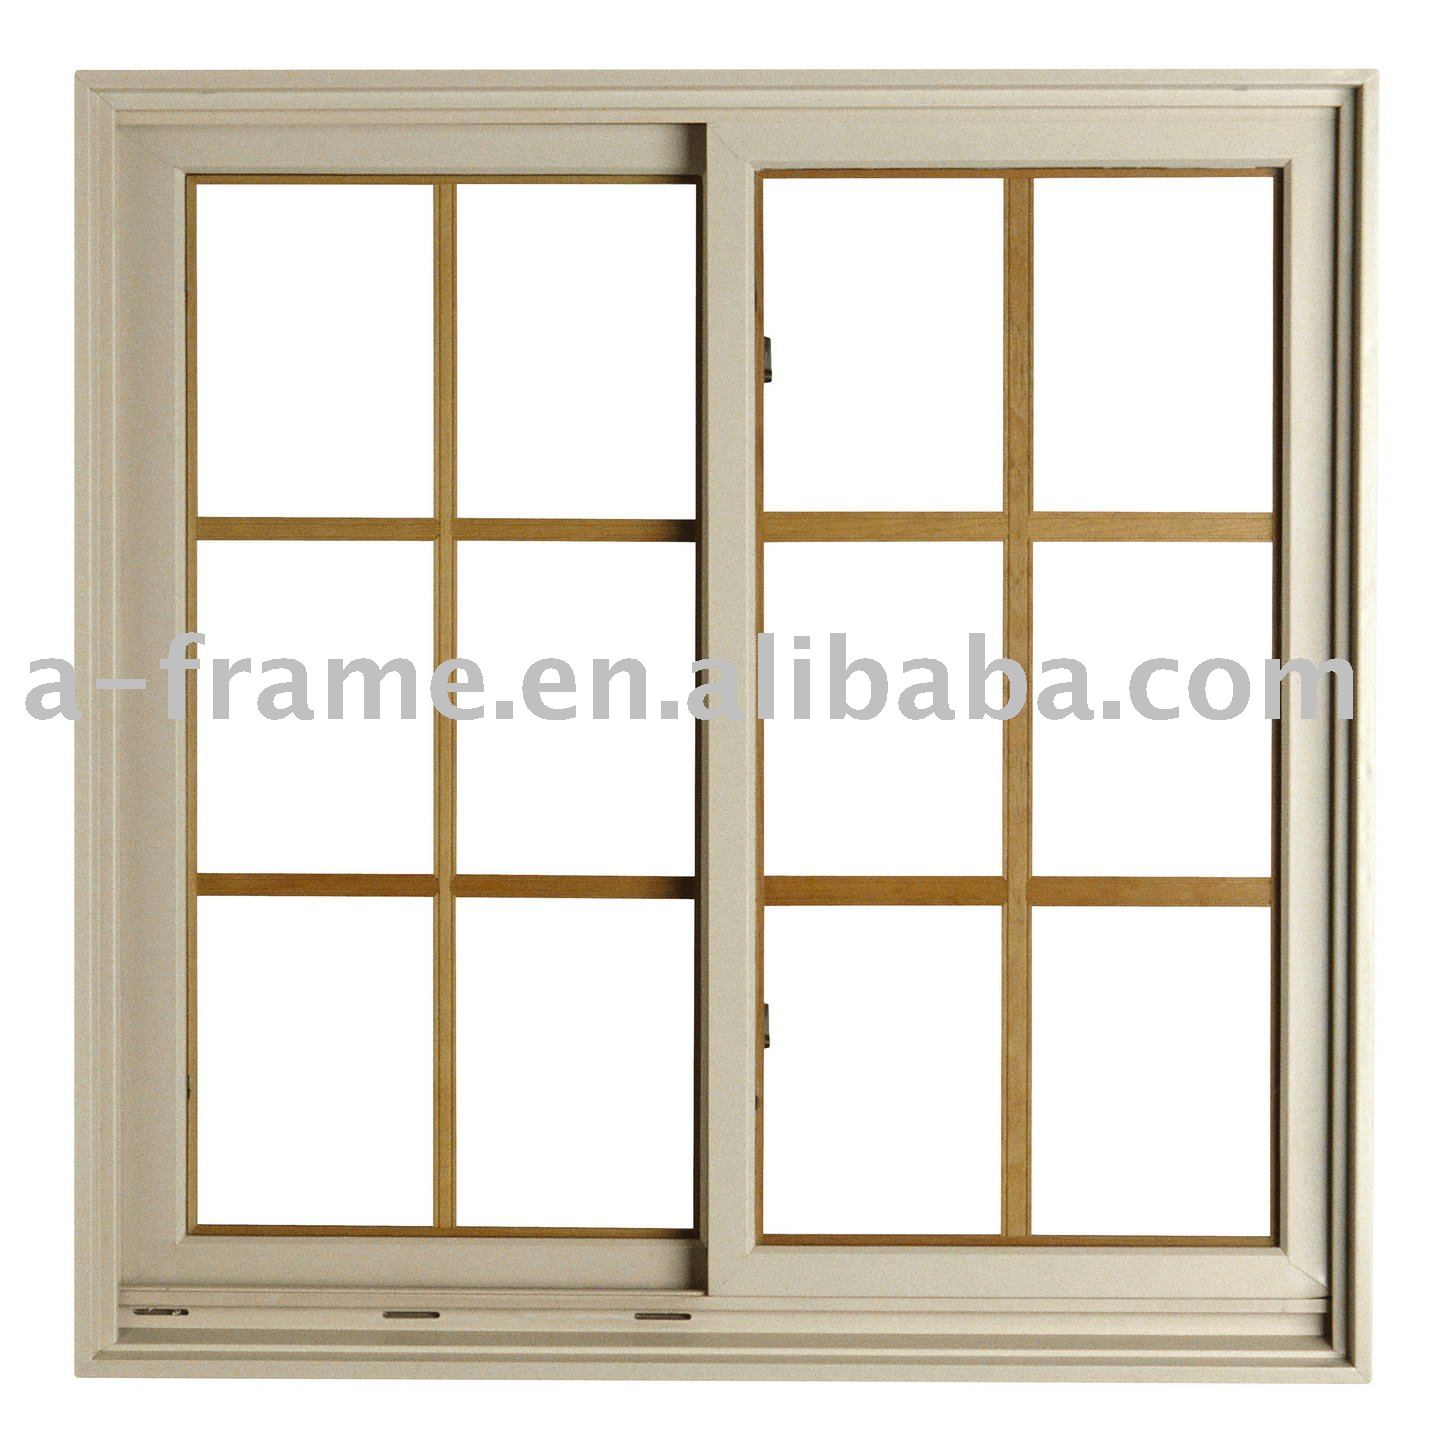 doors and window frames